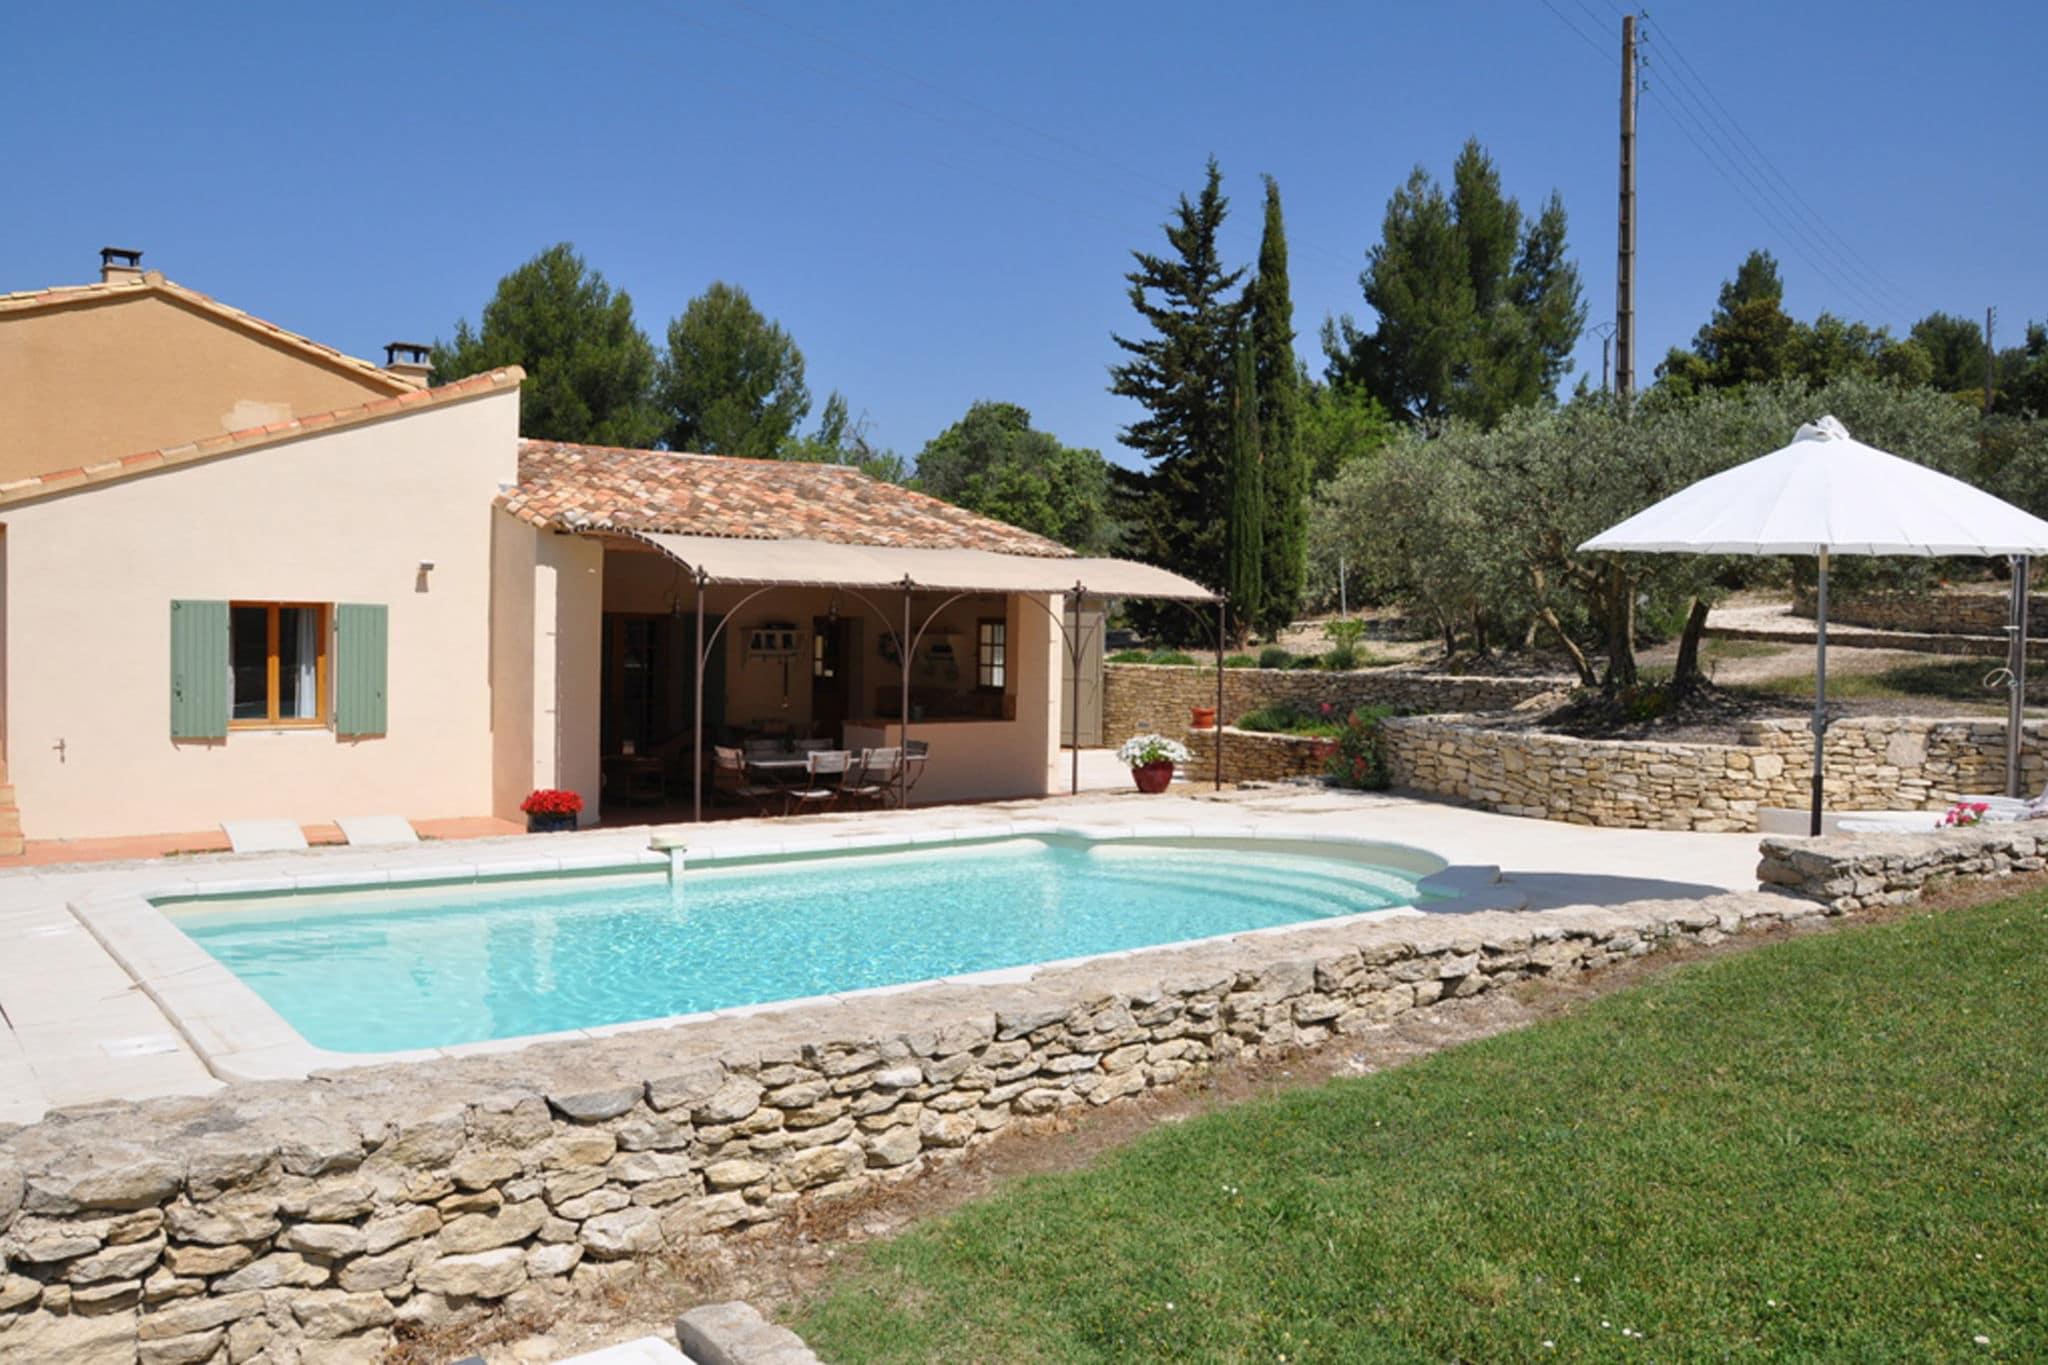 Provençaals vakantiehuis met privézwembad op 3000 m2 tuin, midden in de Luberon